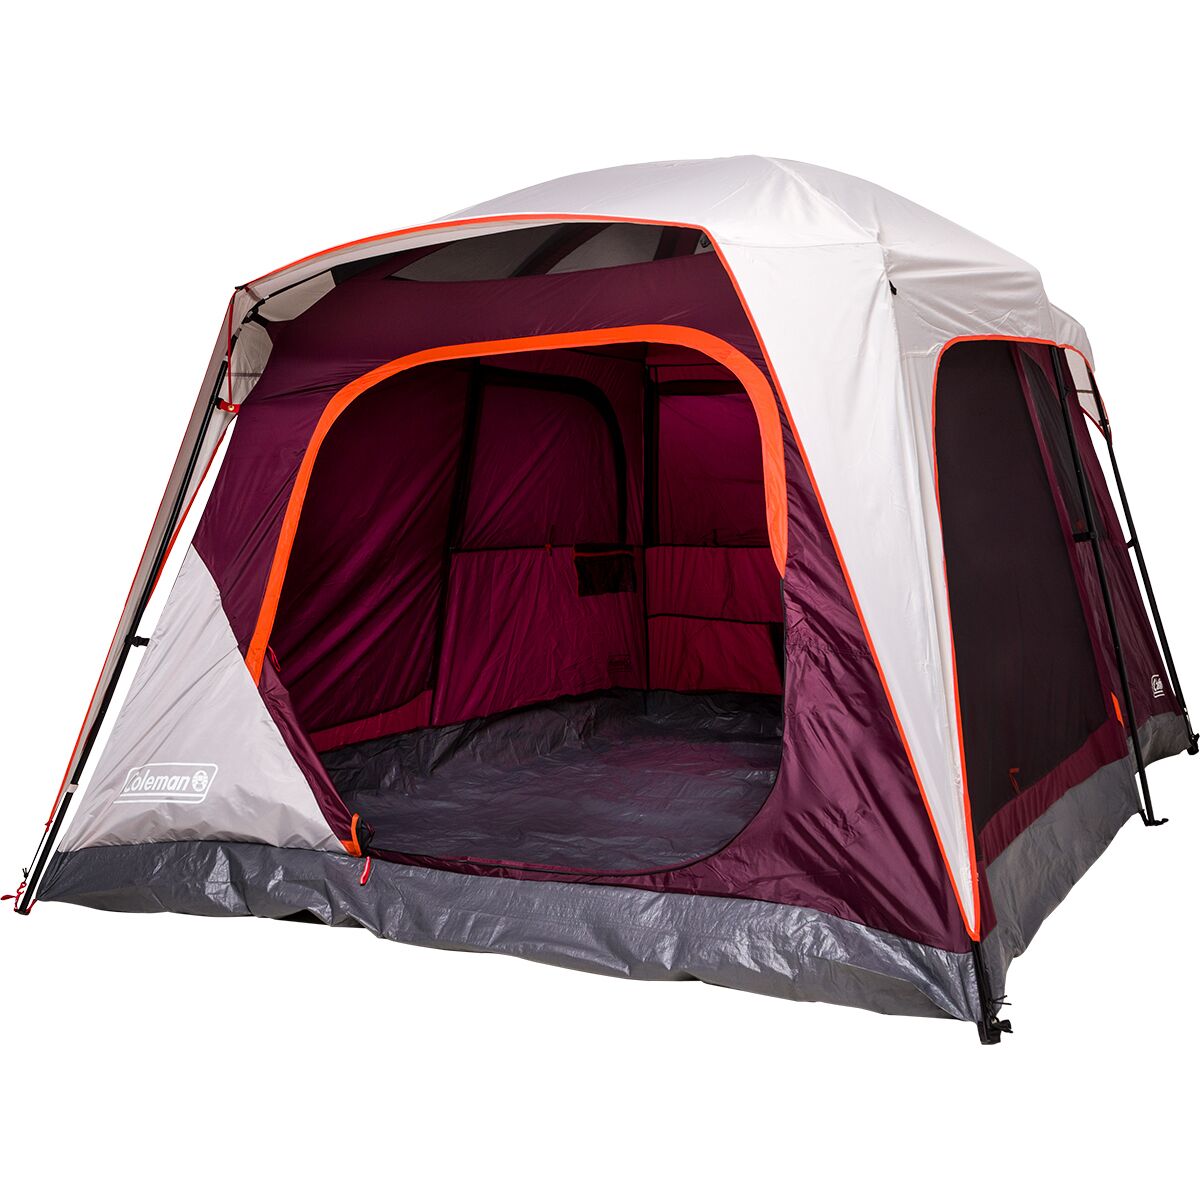 zij is Verlichten Uitrusten Coleman Skylodge Cabin Tent: 8-Person 3-Season - Hike & Camp